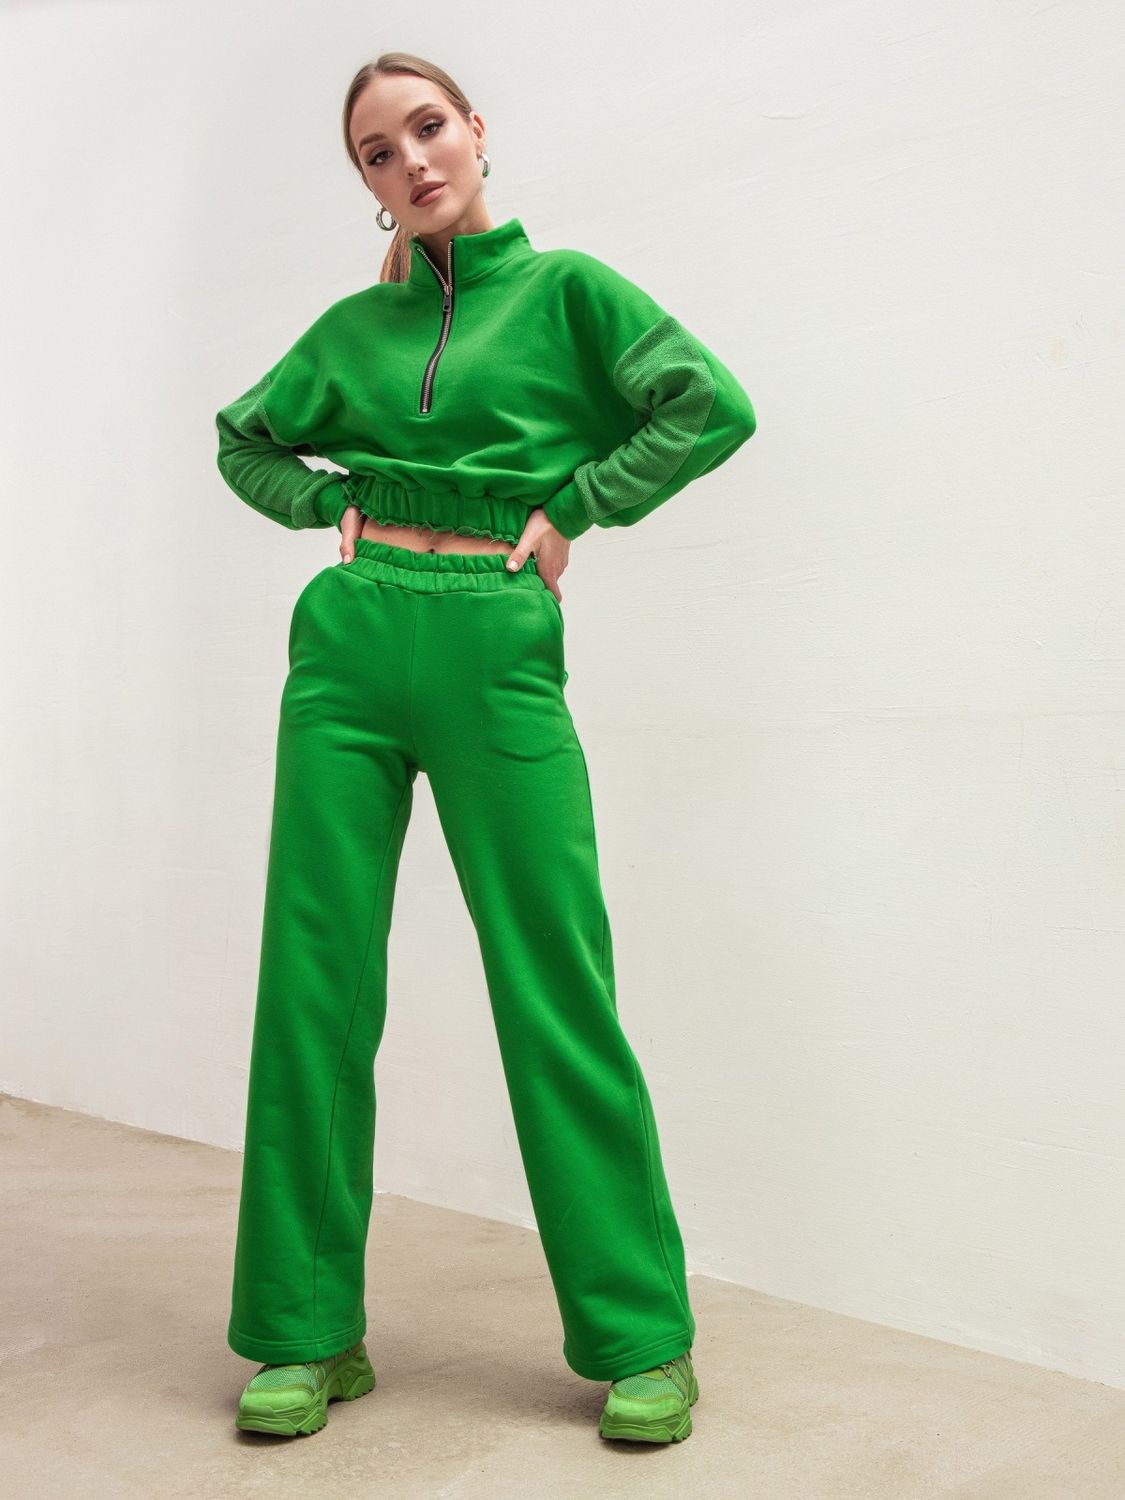 Зелений спортивний костюм для жінок з вкороченою кофтою - фото